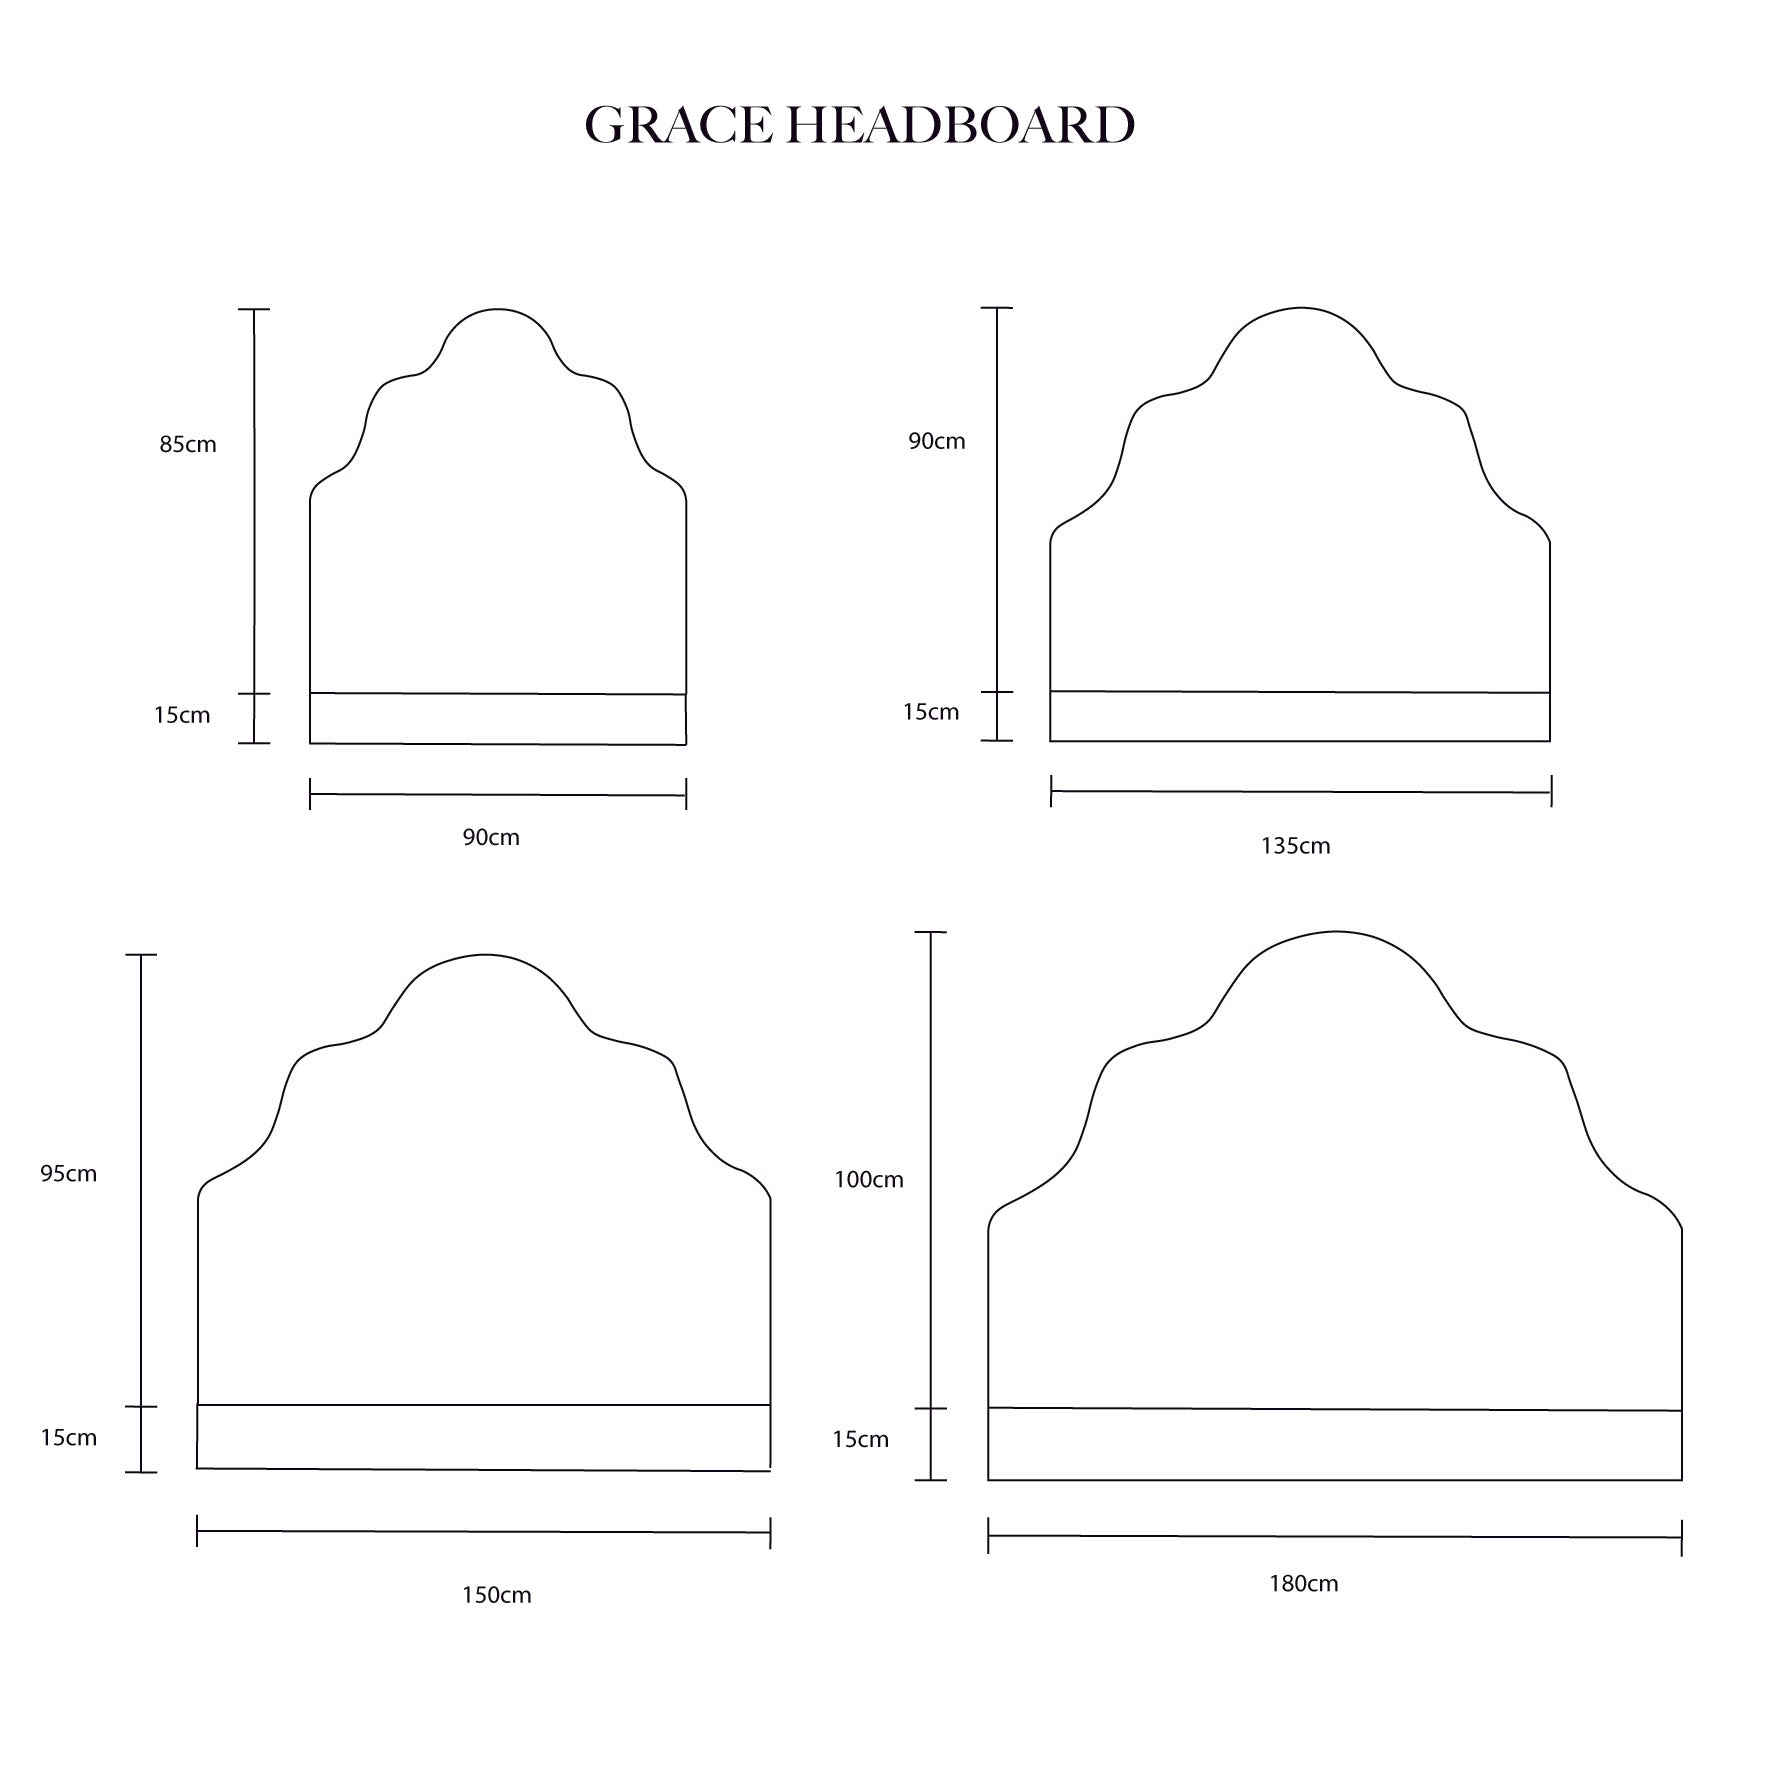 Grace Headboard Double